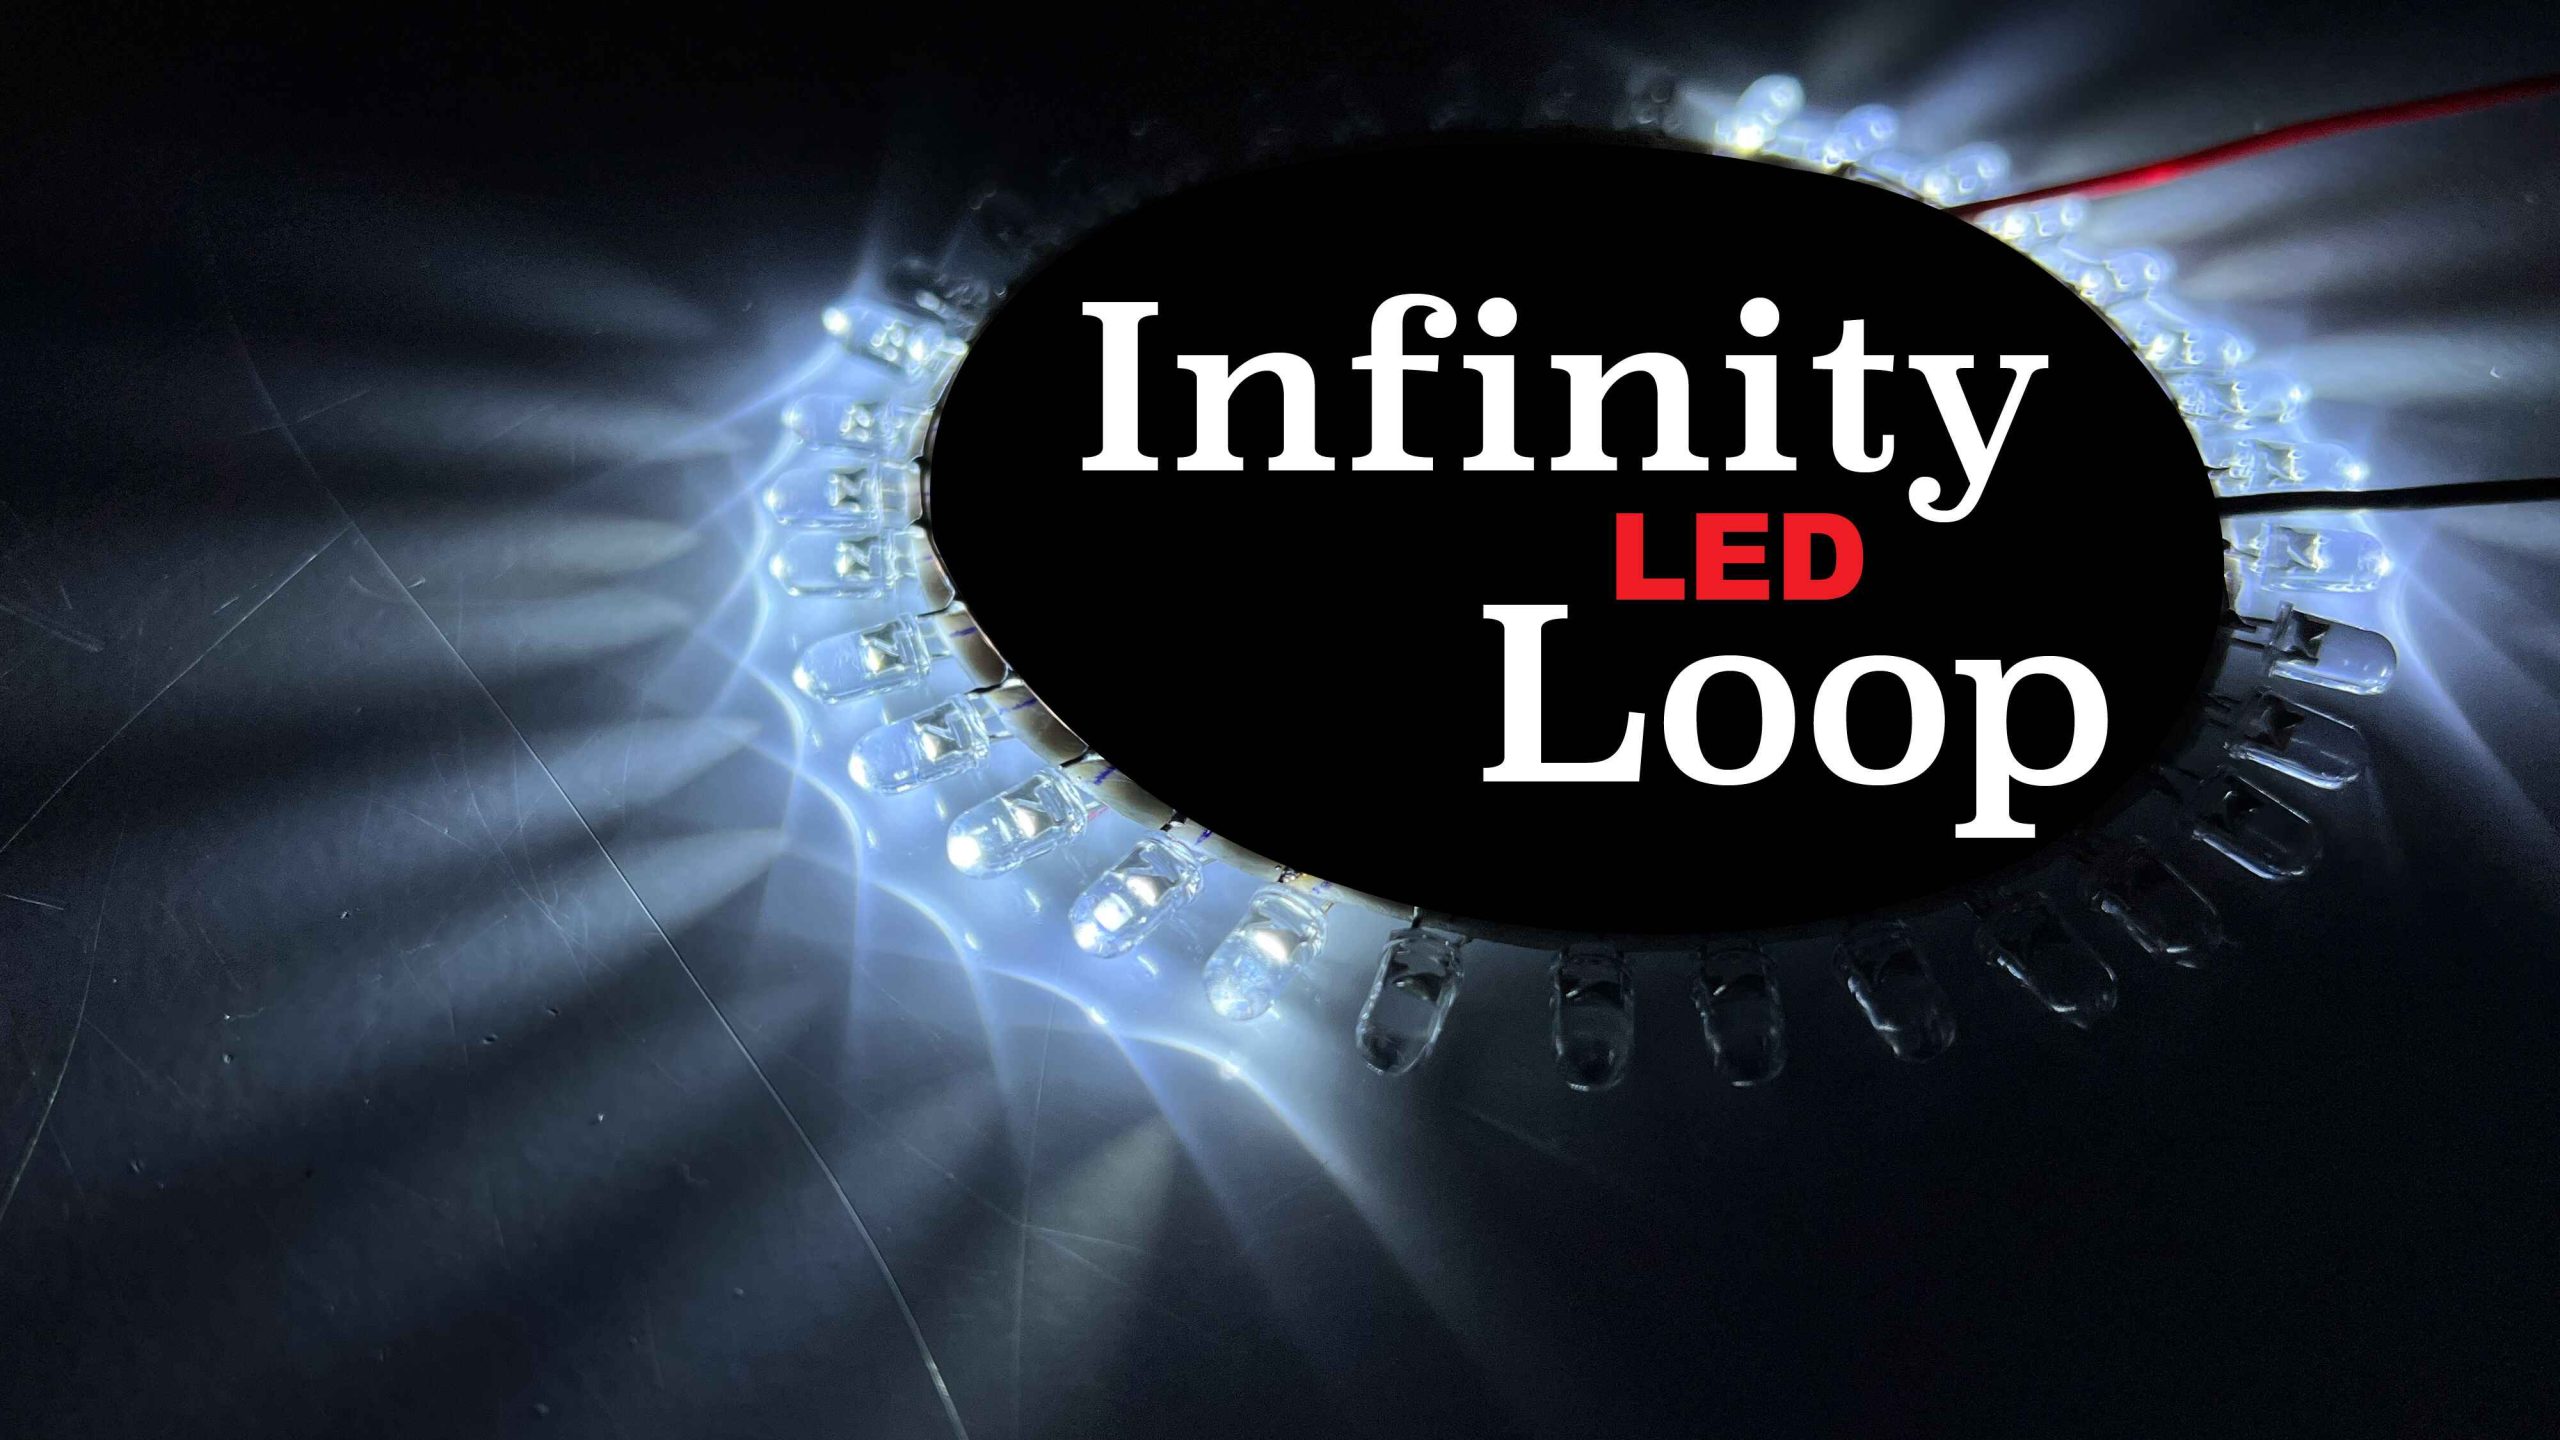 Amazing Ring LED light pattern | Electronics